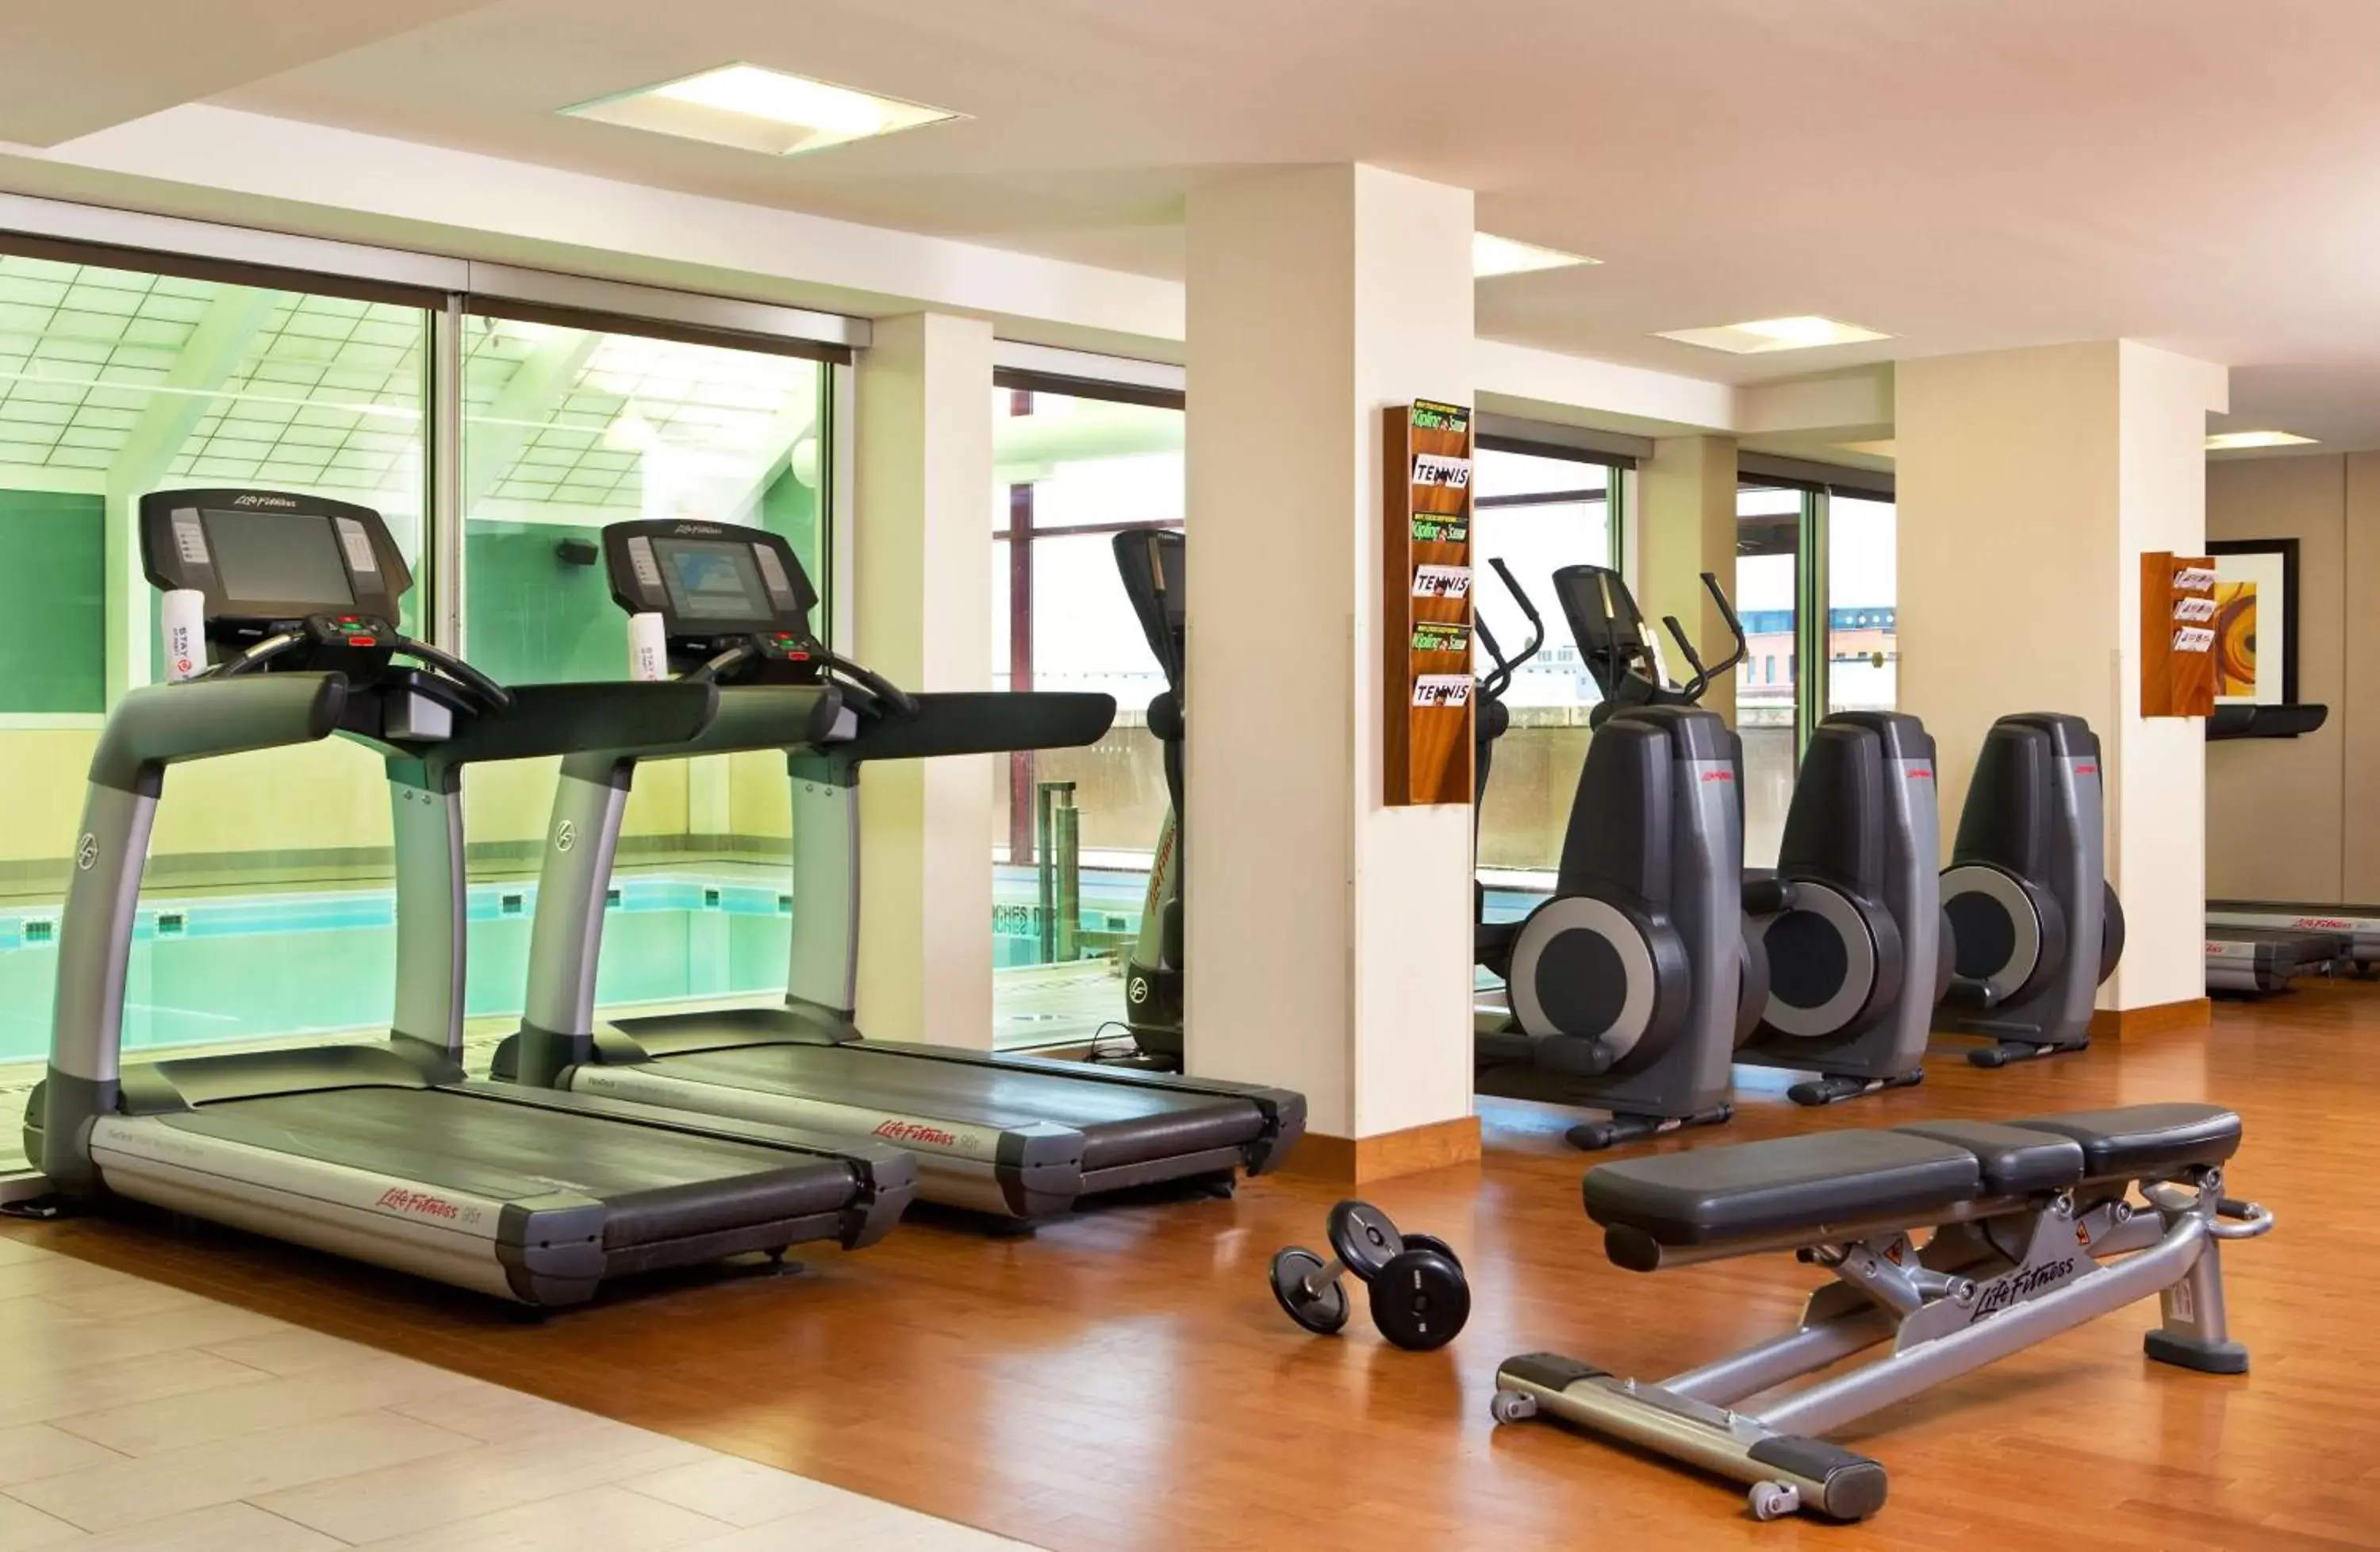 Fitness centre/facilities, Fitness Center/Facilities in Hyatt Regency Rochester